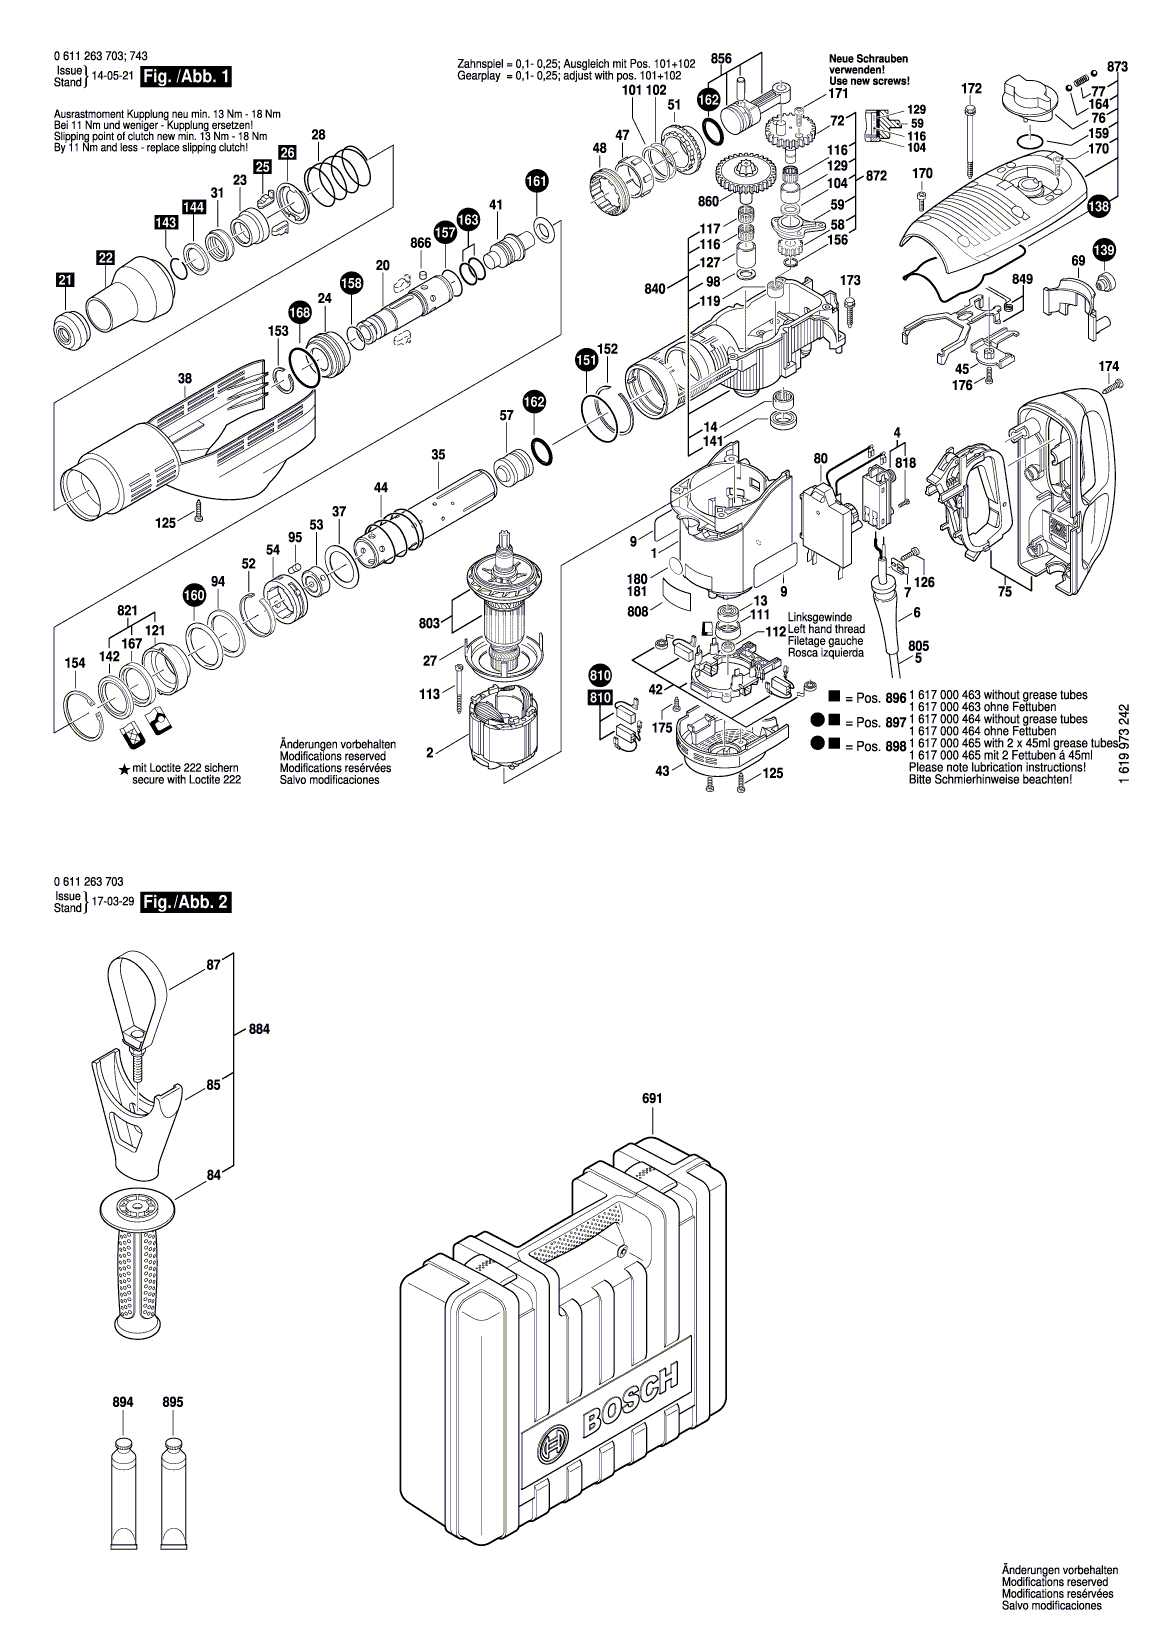 Схема на Перфоратор Bosch GBH 7-46 DE (0 611 263 703)